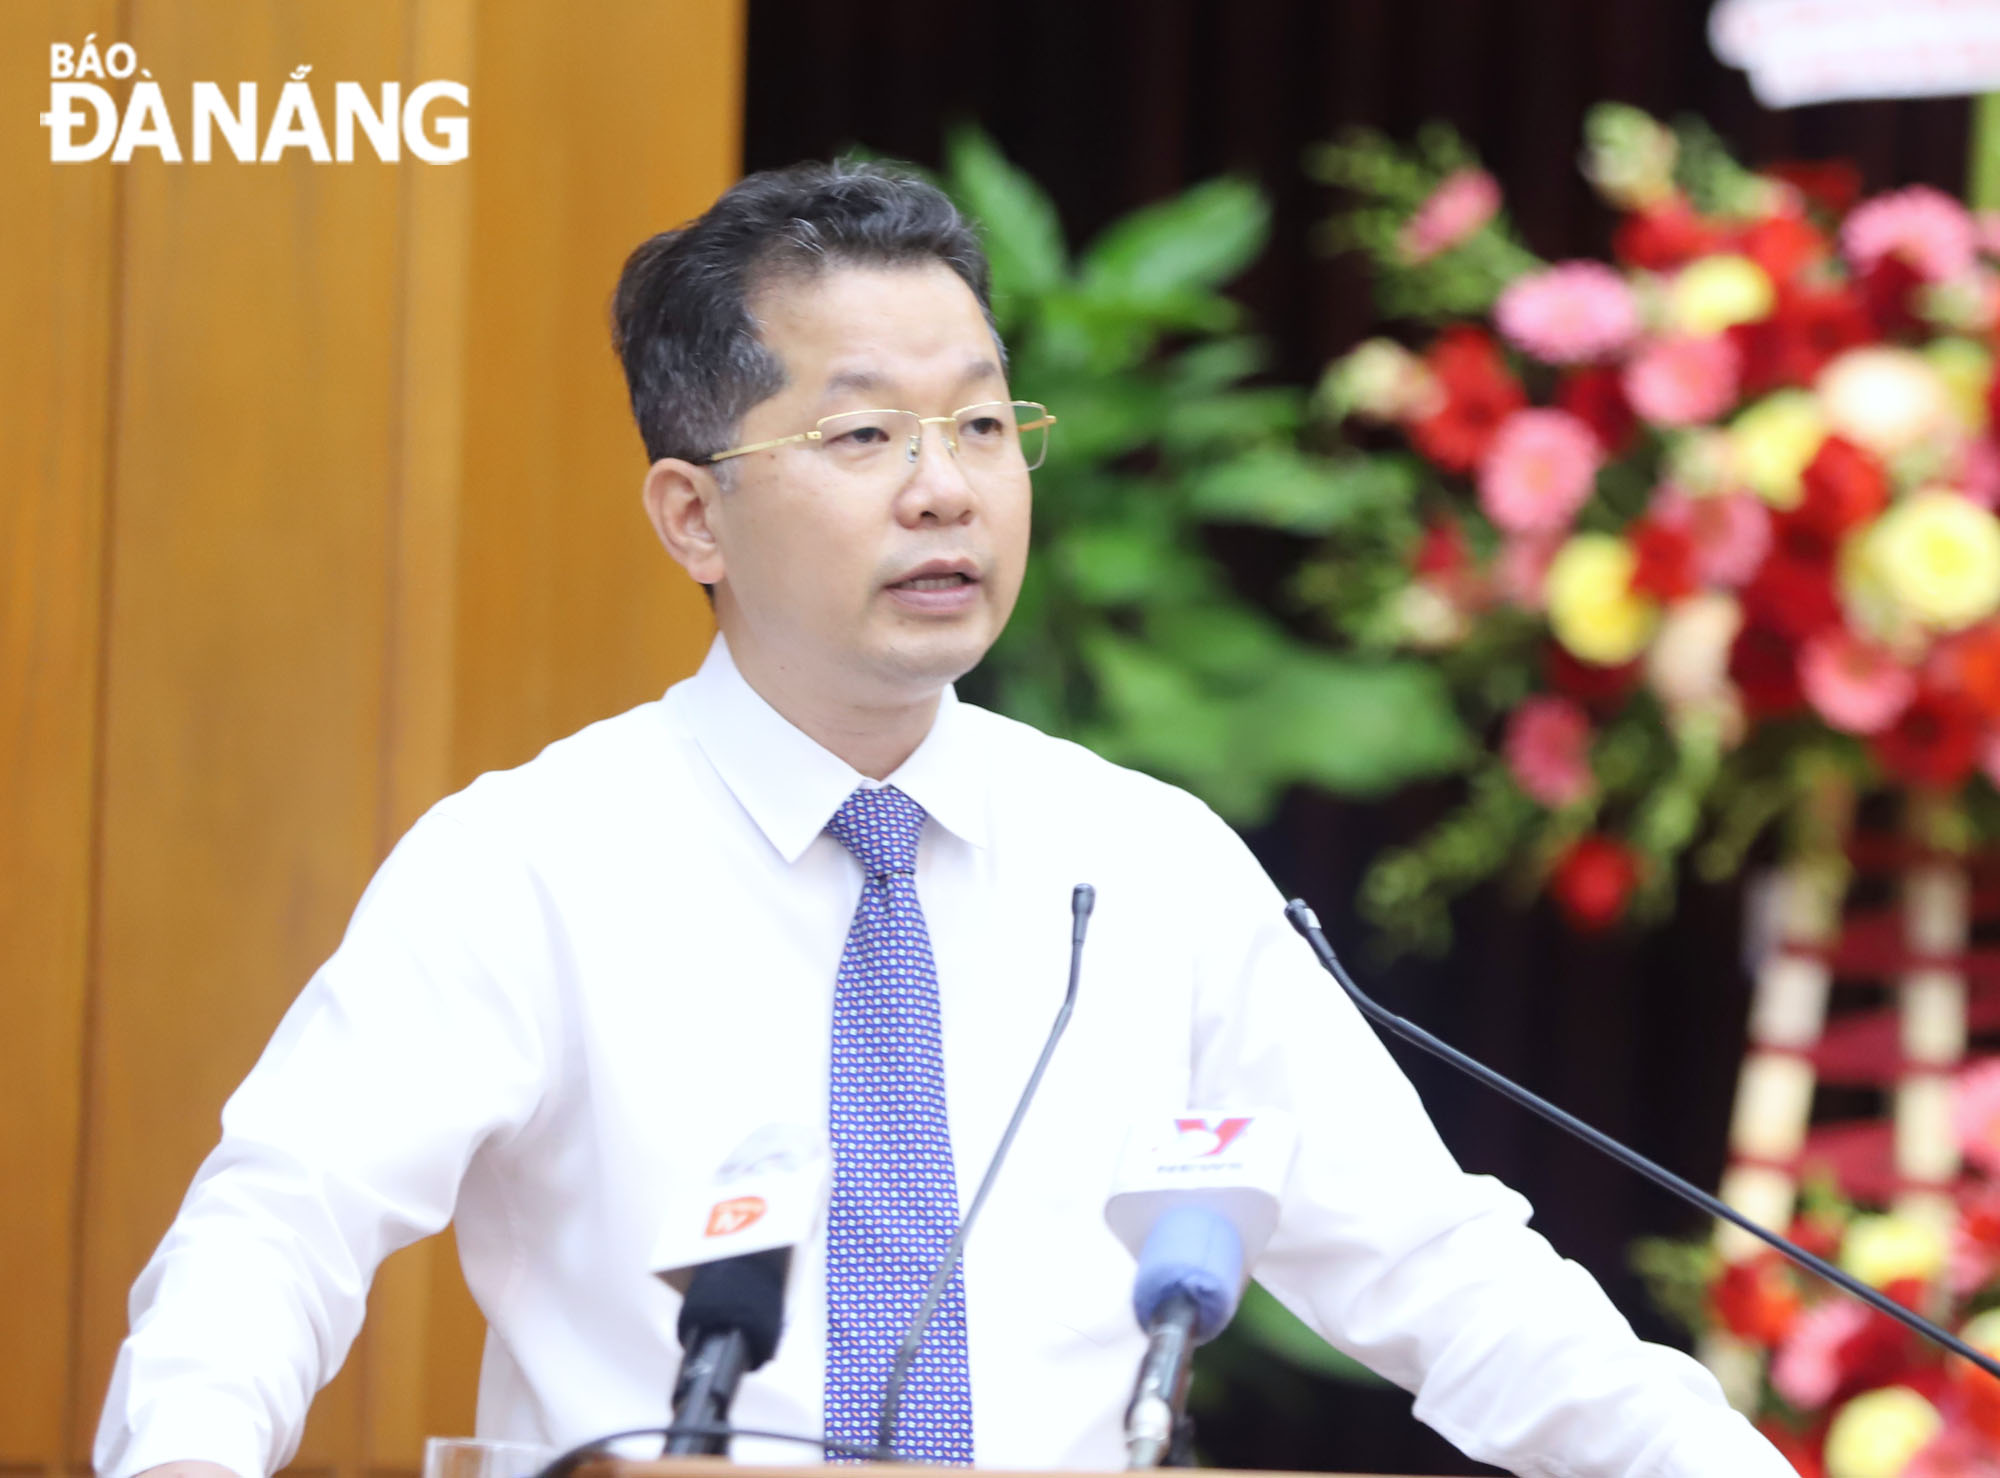 Secretary Nguyen Van Quang delivering his closing speech at the seminar. Photo: NGOC PHU